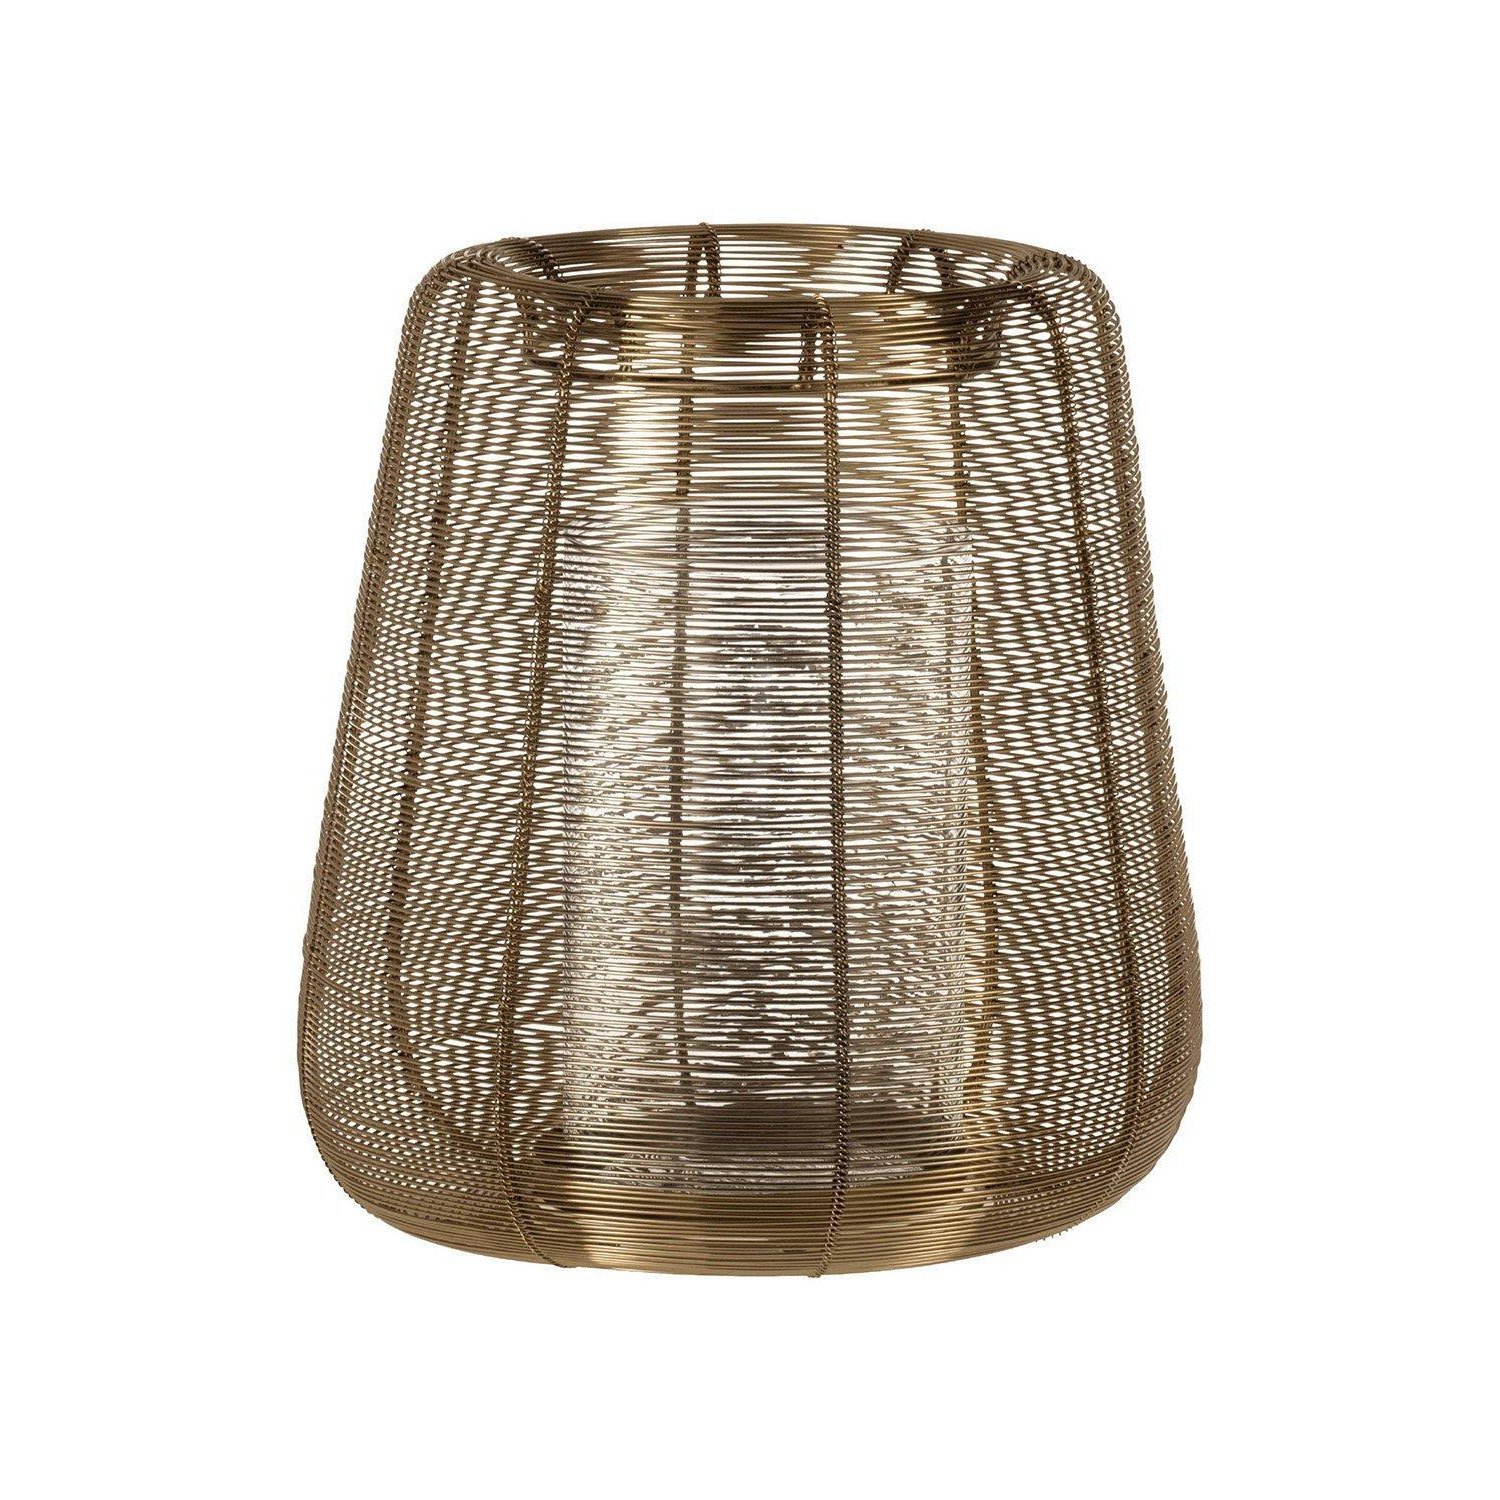 Hagony Candleholder With Gold Wireframe Bowl - image 1